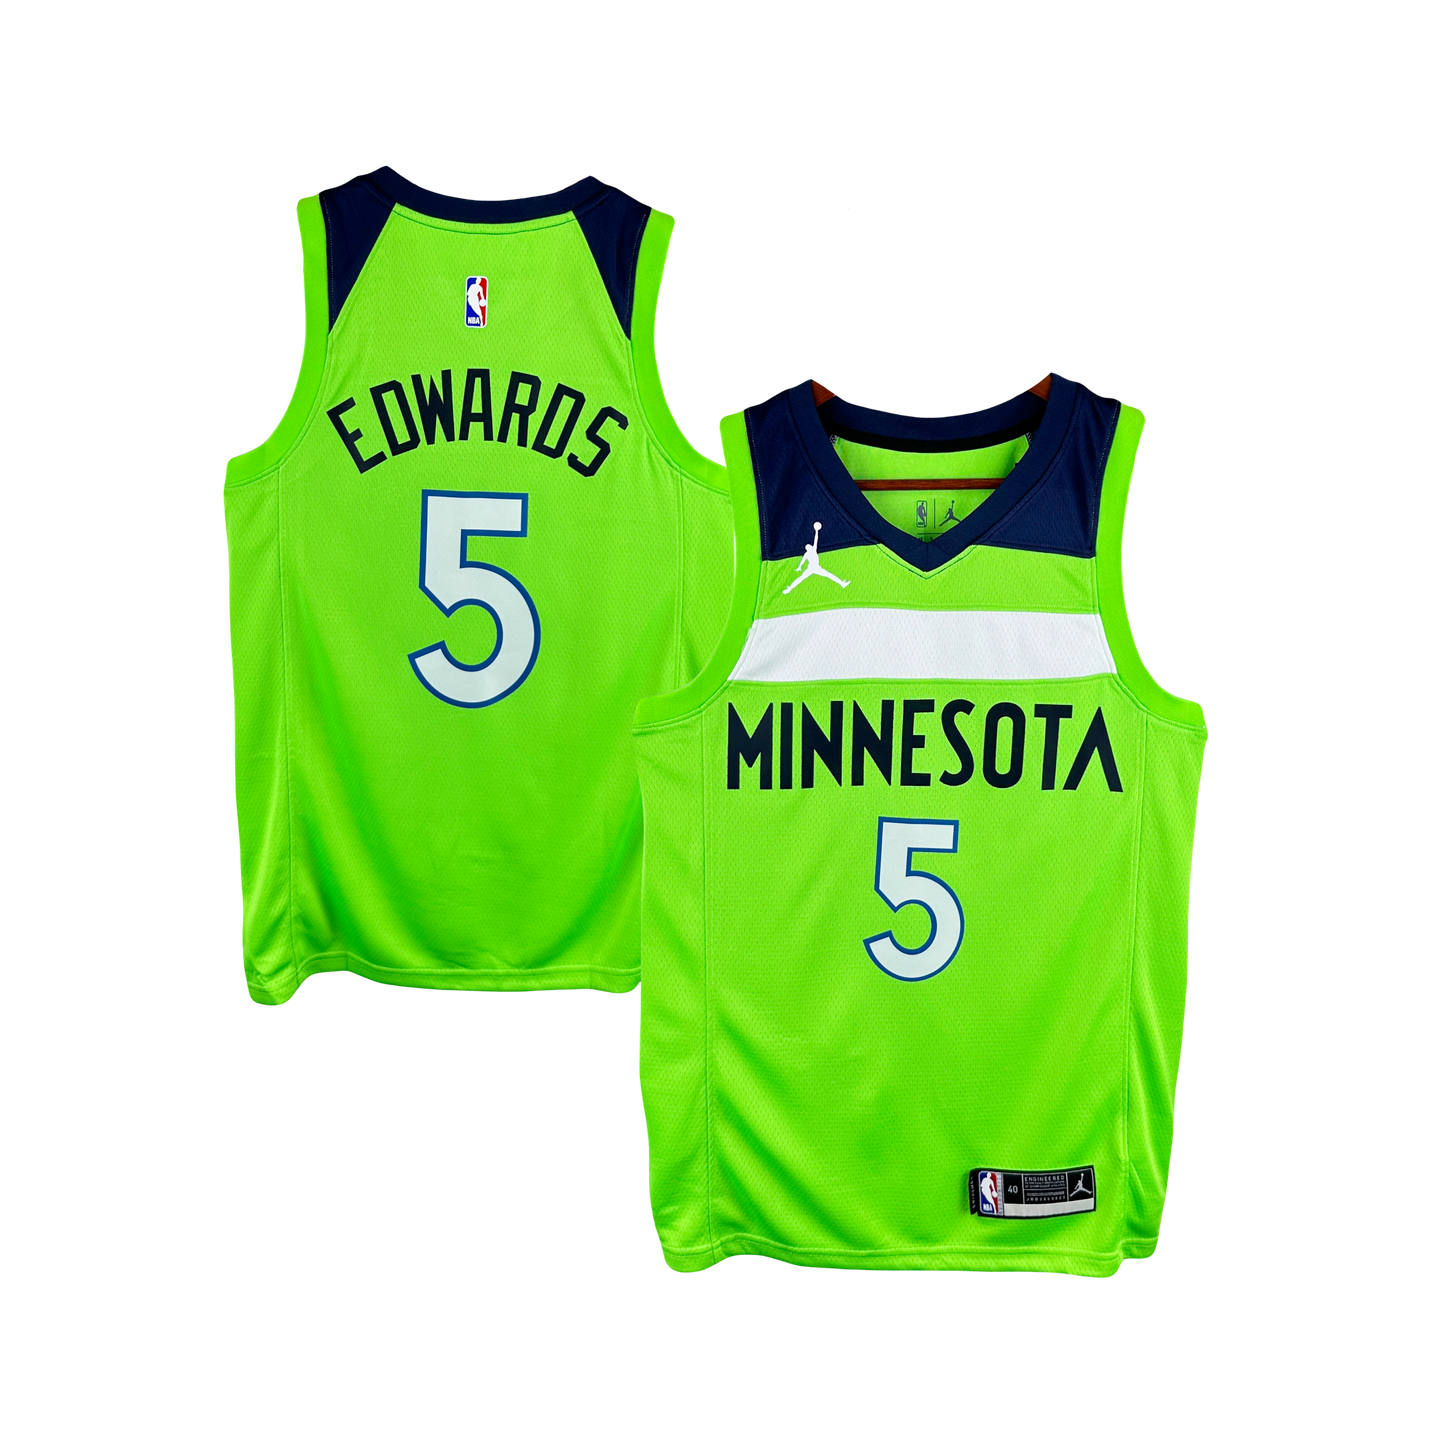 Anthony Edwards Minnesota Timberwolves Nike Statement Edition NBA Swingman Jersey - Neon Green